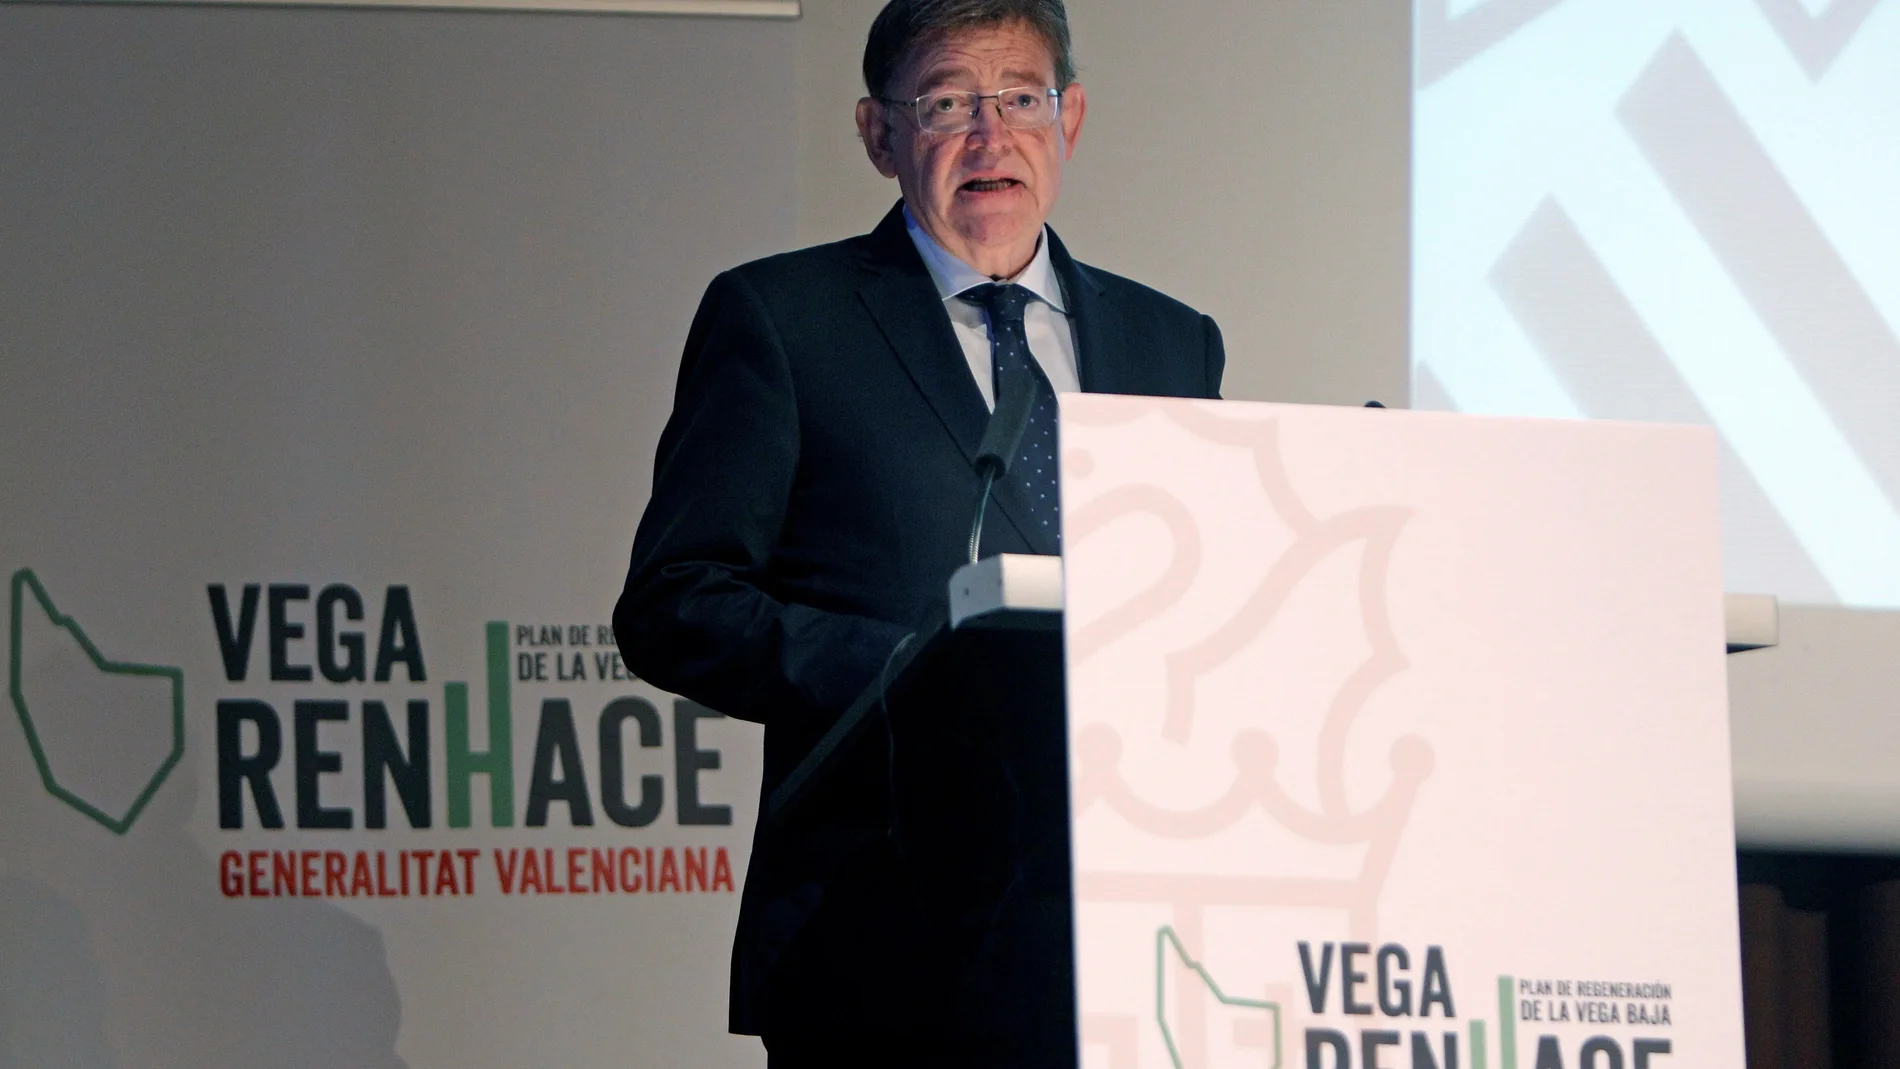 El Presidente de la Generalitat Valenciana, Ximo Puig, durante su intervención en la presentación del plan de regeneración de la Vega Baja, "Vega RenHace"